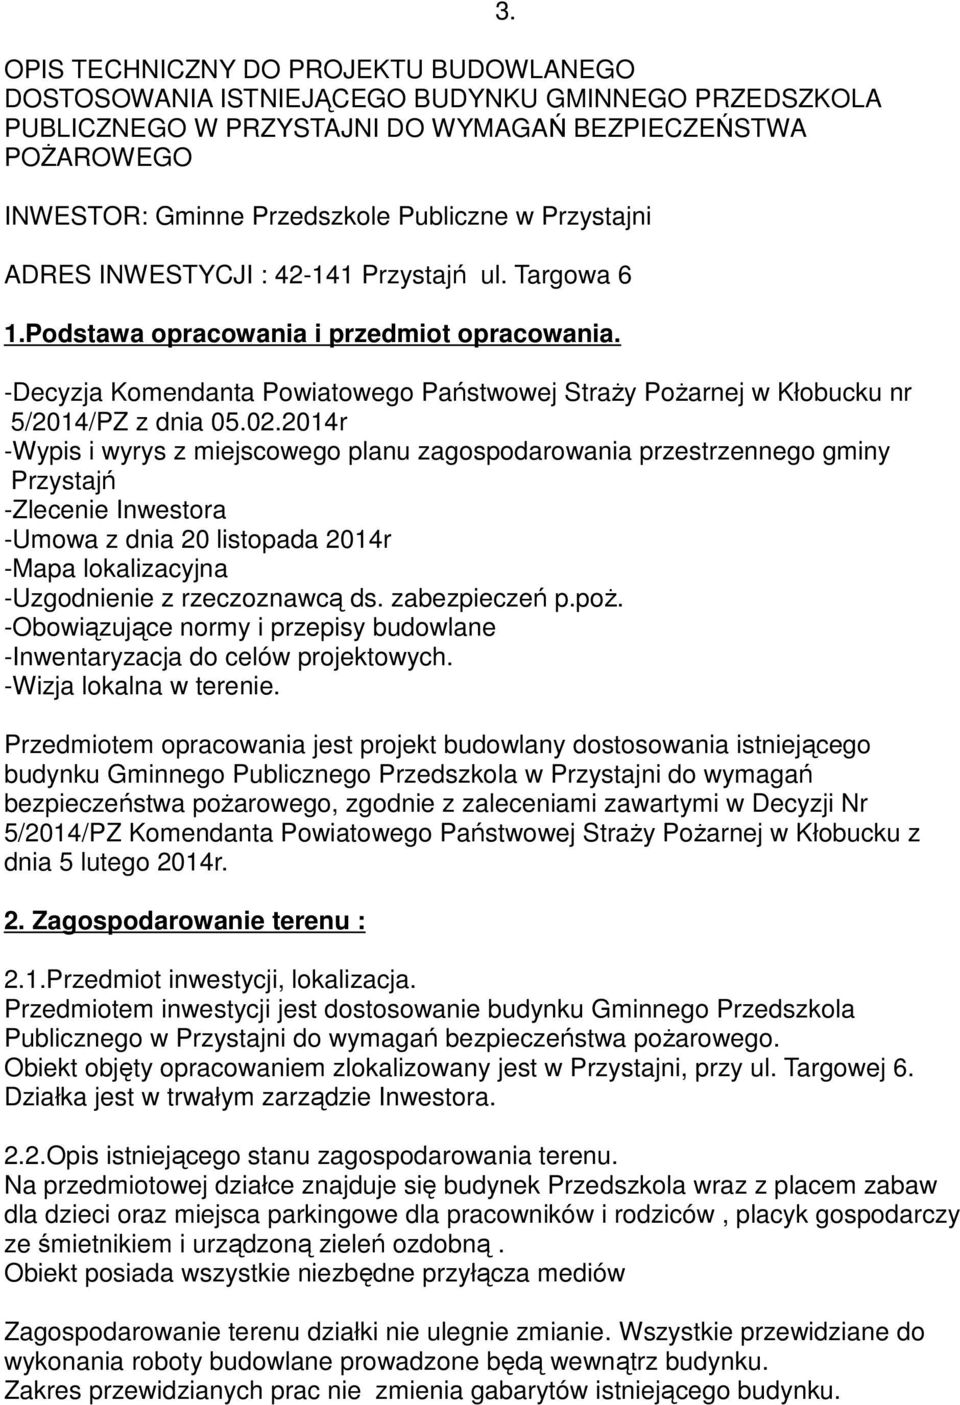 -Decyzja Komendanta Powiatowego Państwowej Straży Pożarnej w Kłobucku nr 5/2014/PZ z dnia 05.02.